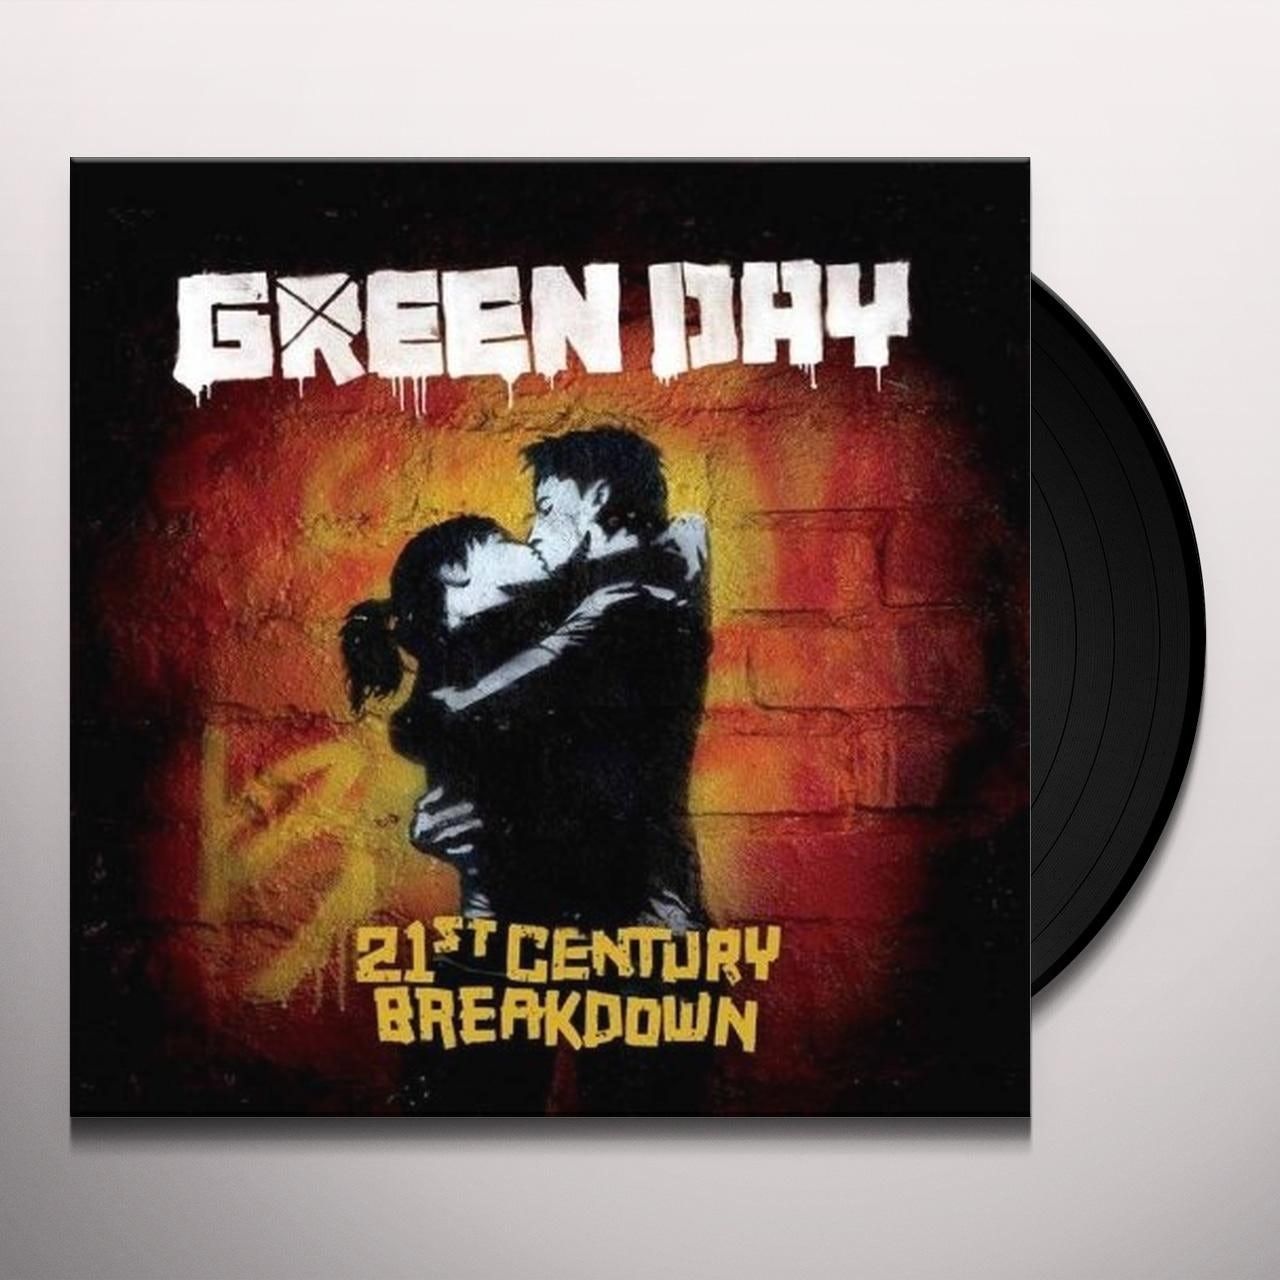 Green Day - 21st Century Breakdown (180g 2LP gatefold) - Vinyl - New